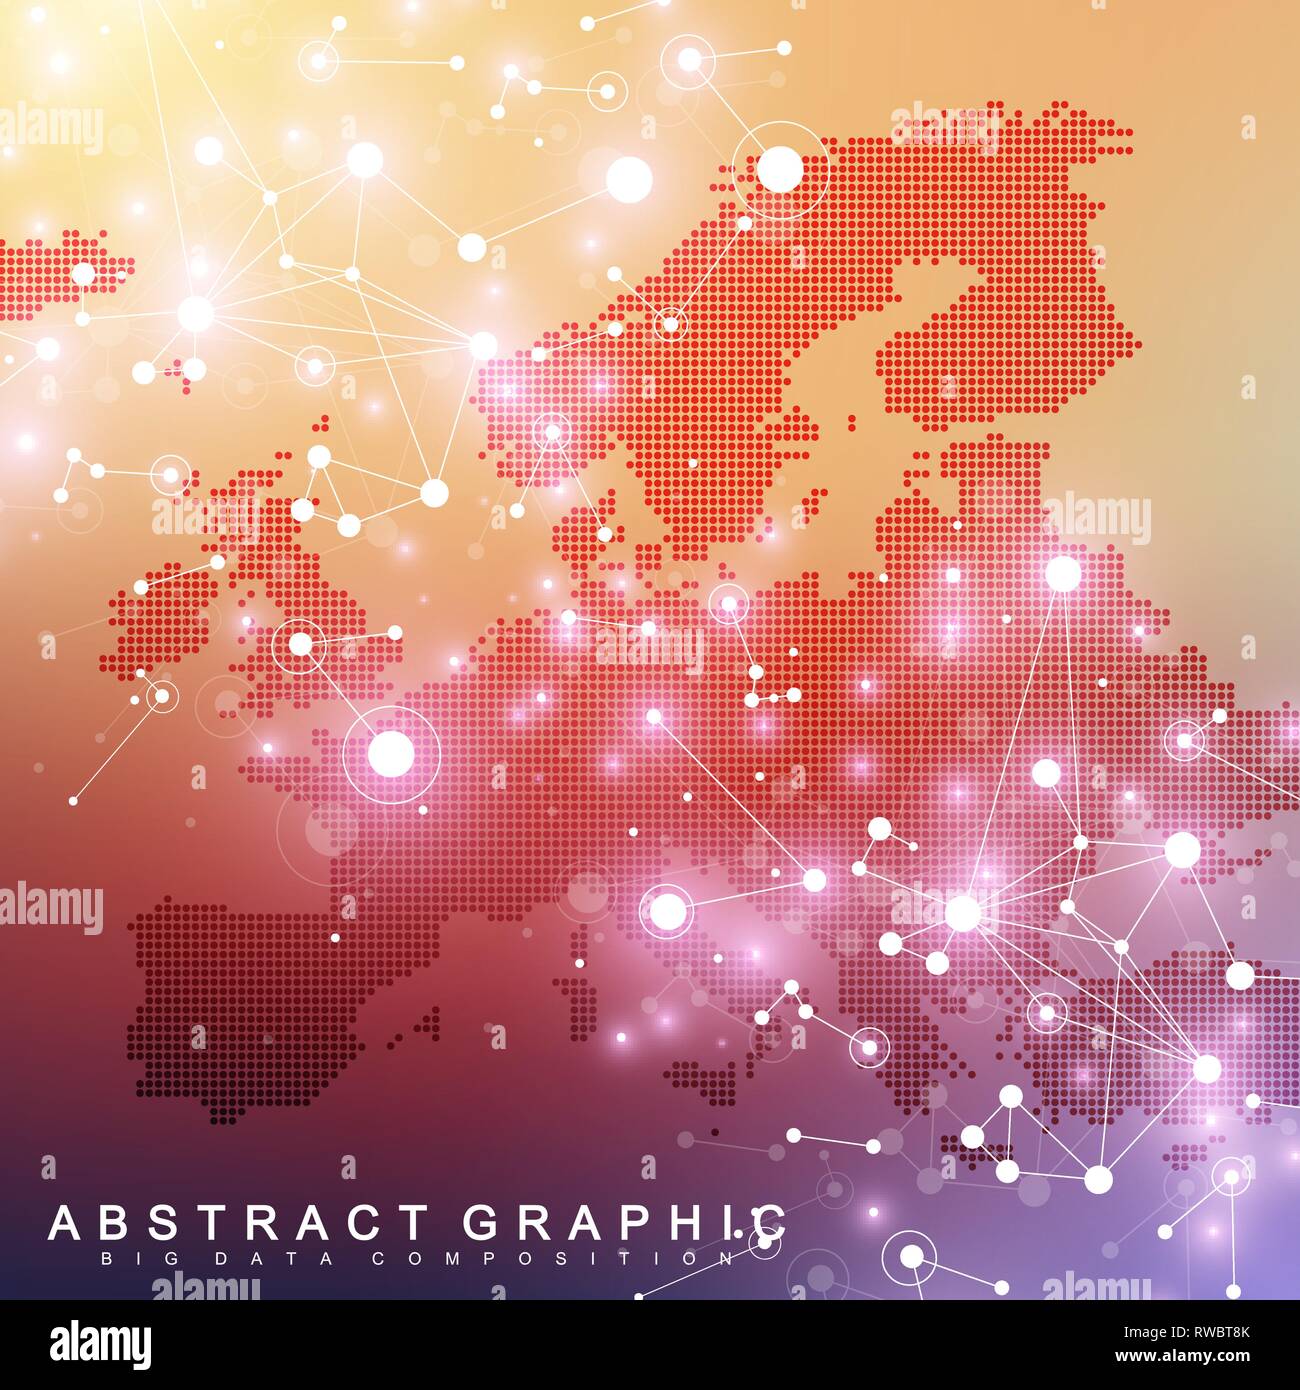 Geometrische grafik hintergrund Kommunikation mit Europa Karte. Grosse Daten komplex mit Verbindungen. Perspektive Kulisse. Minimale array. Digitale Daten Stock Vektor